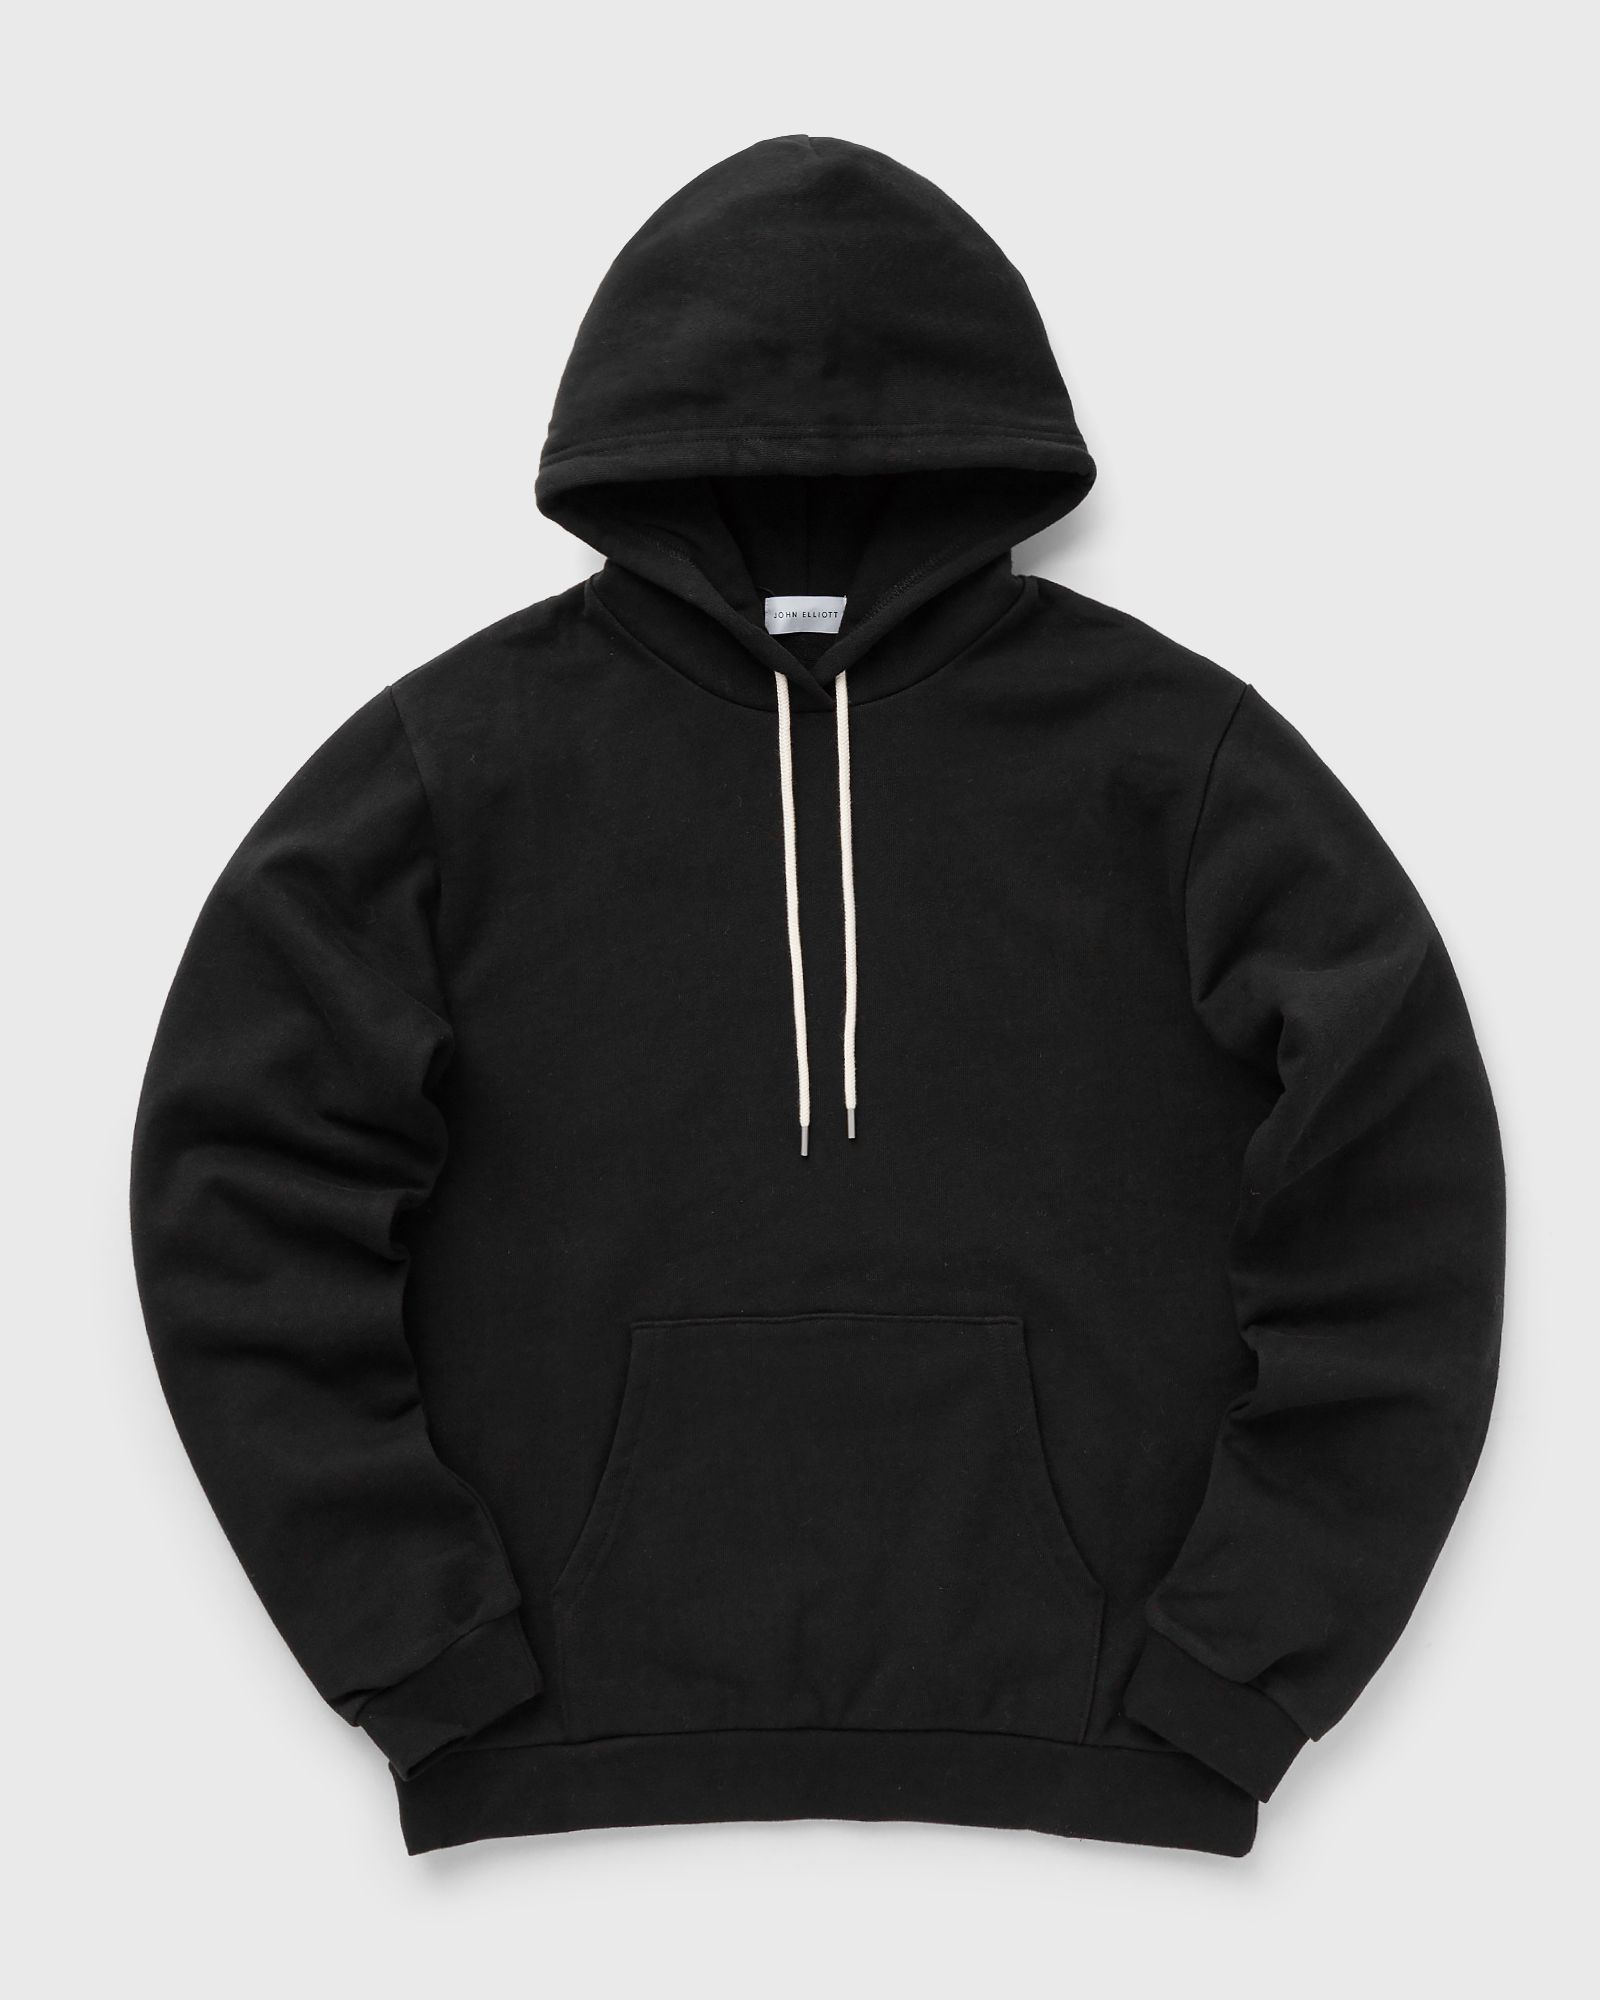 John Elliott - beach hoodie men hoodies black in größe:xl